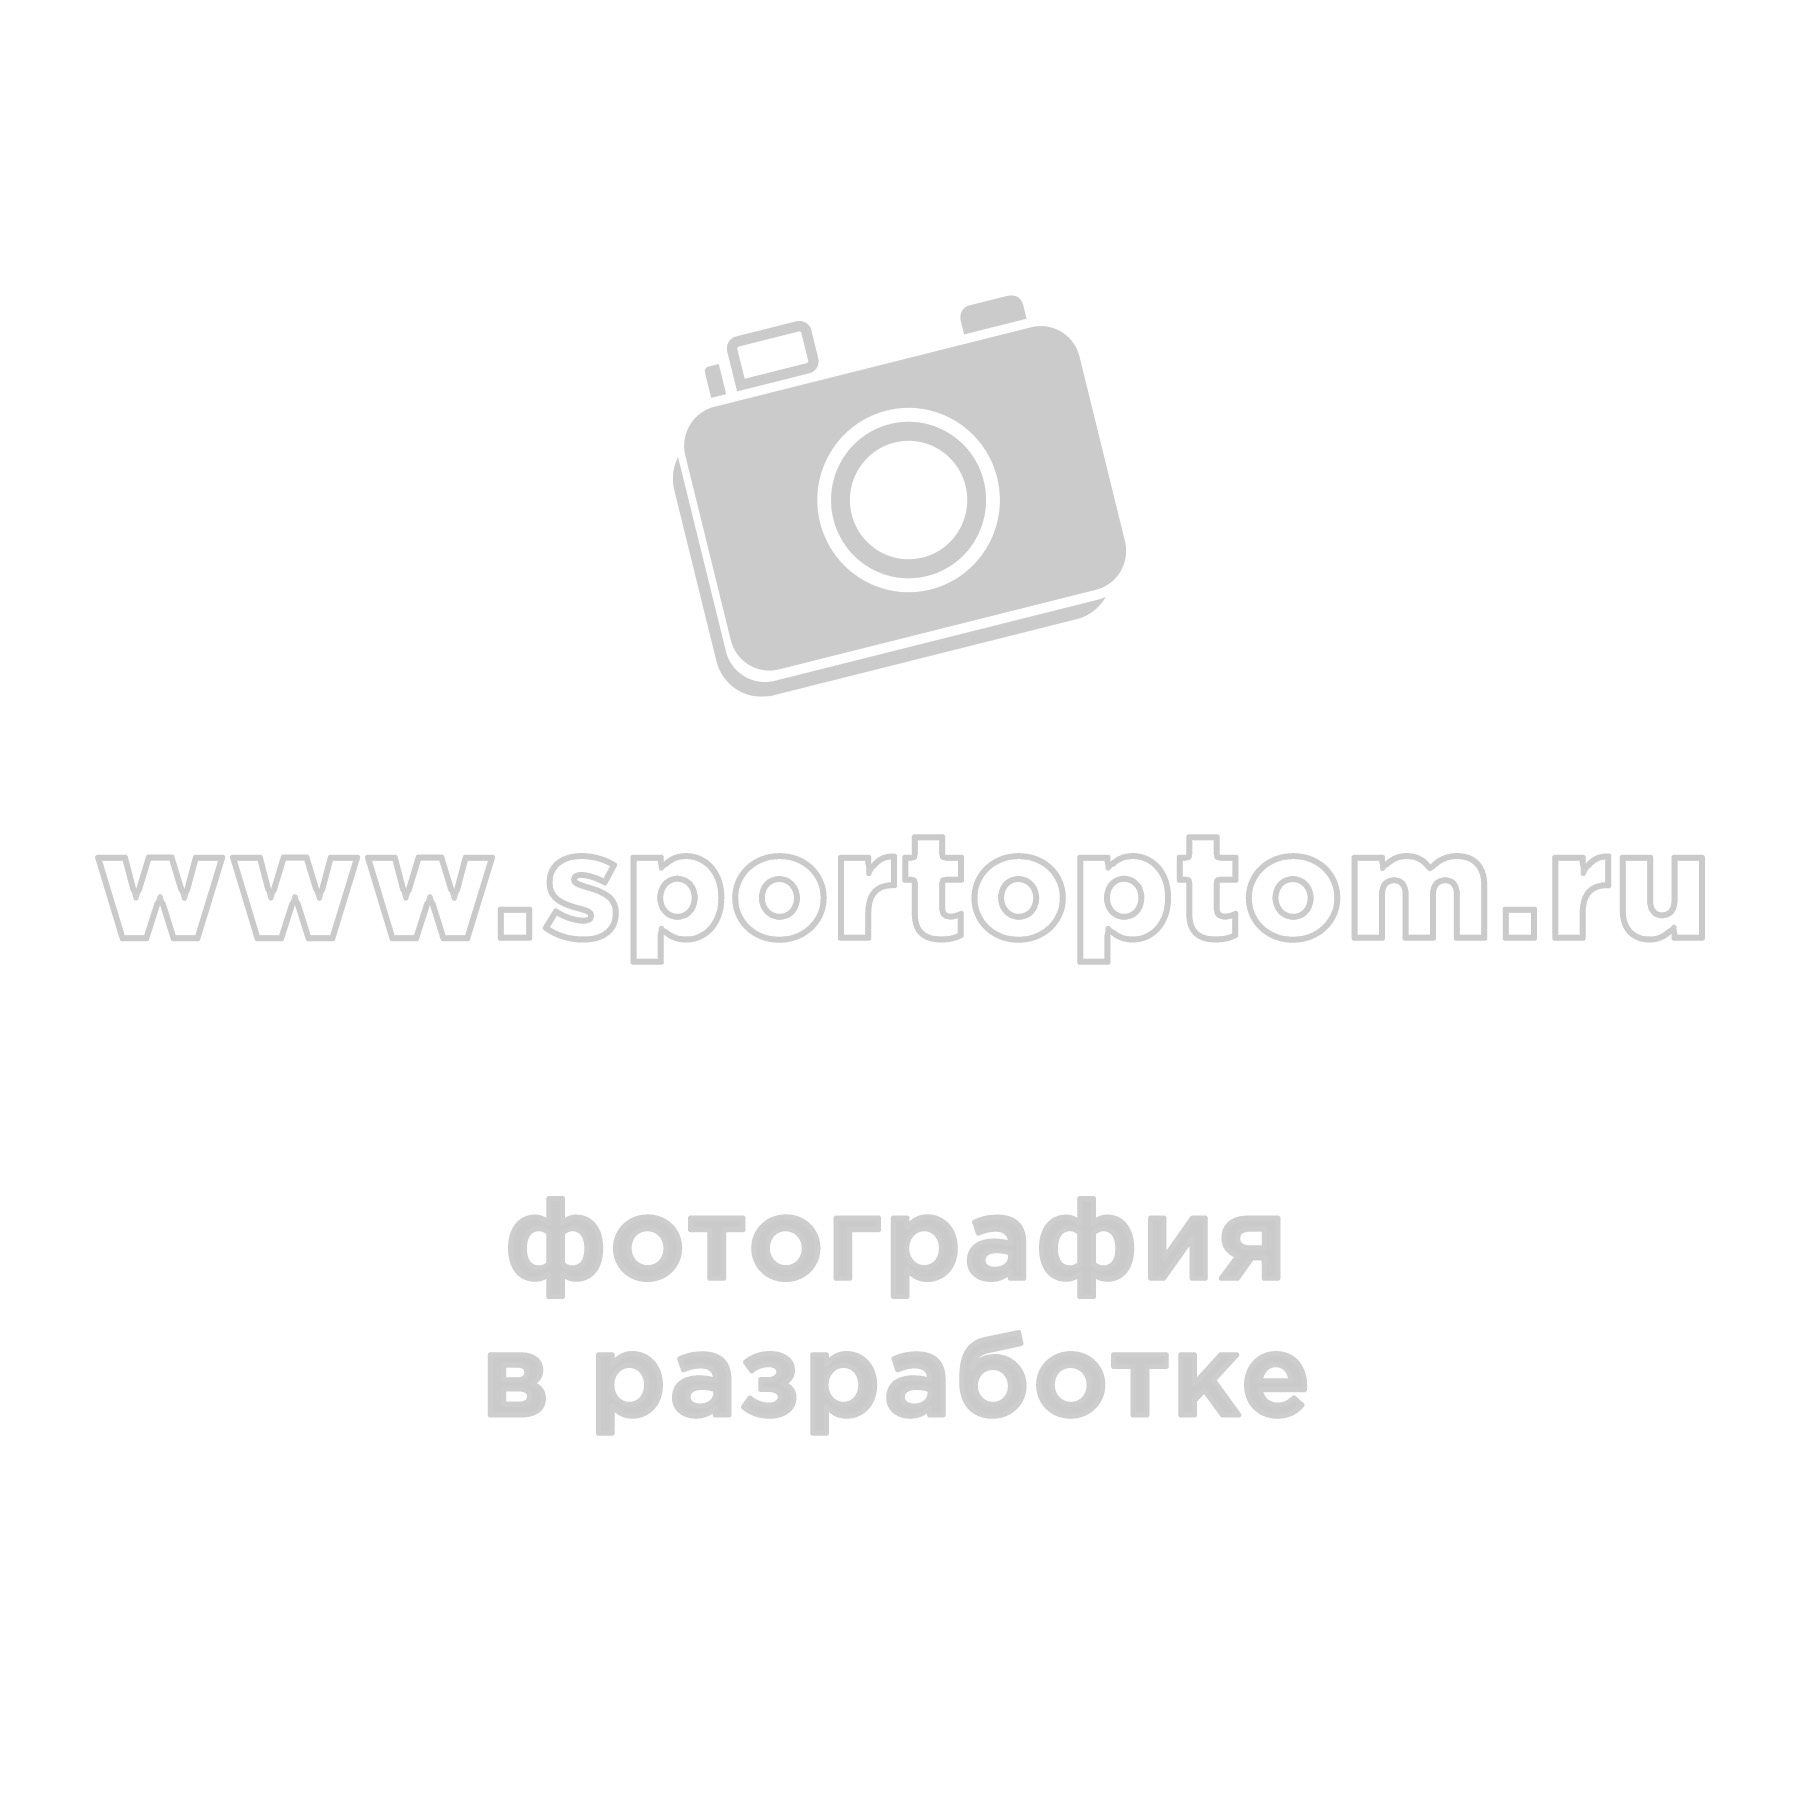 Костюм утепленный Рыбак-1 (куртка+полукомбинезон) SM-276 44-46/170-176 КМФ